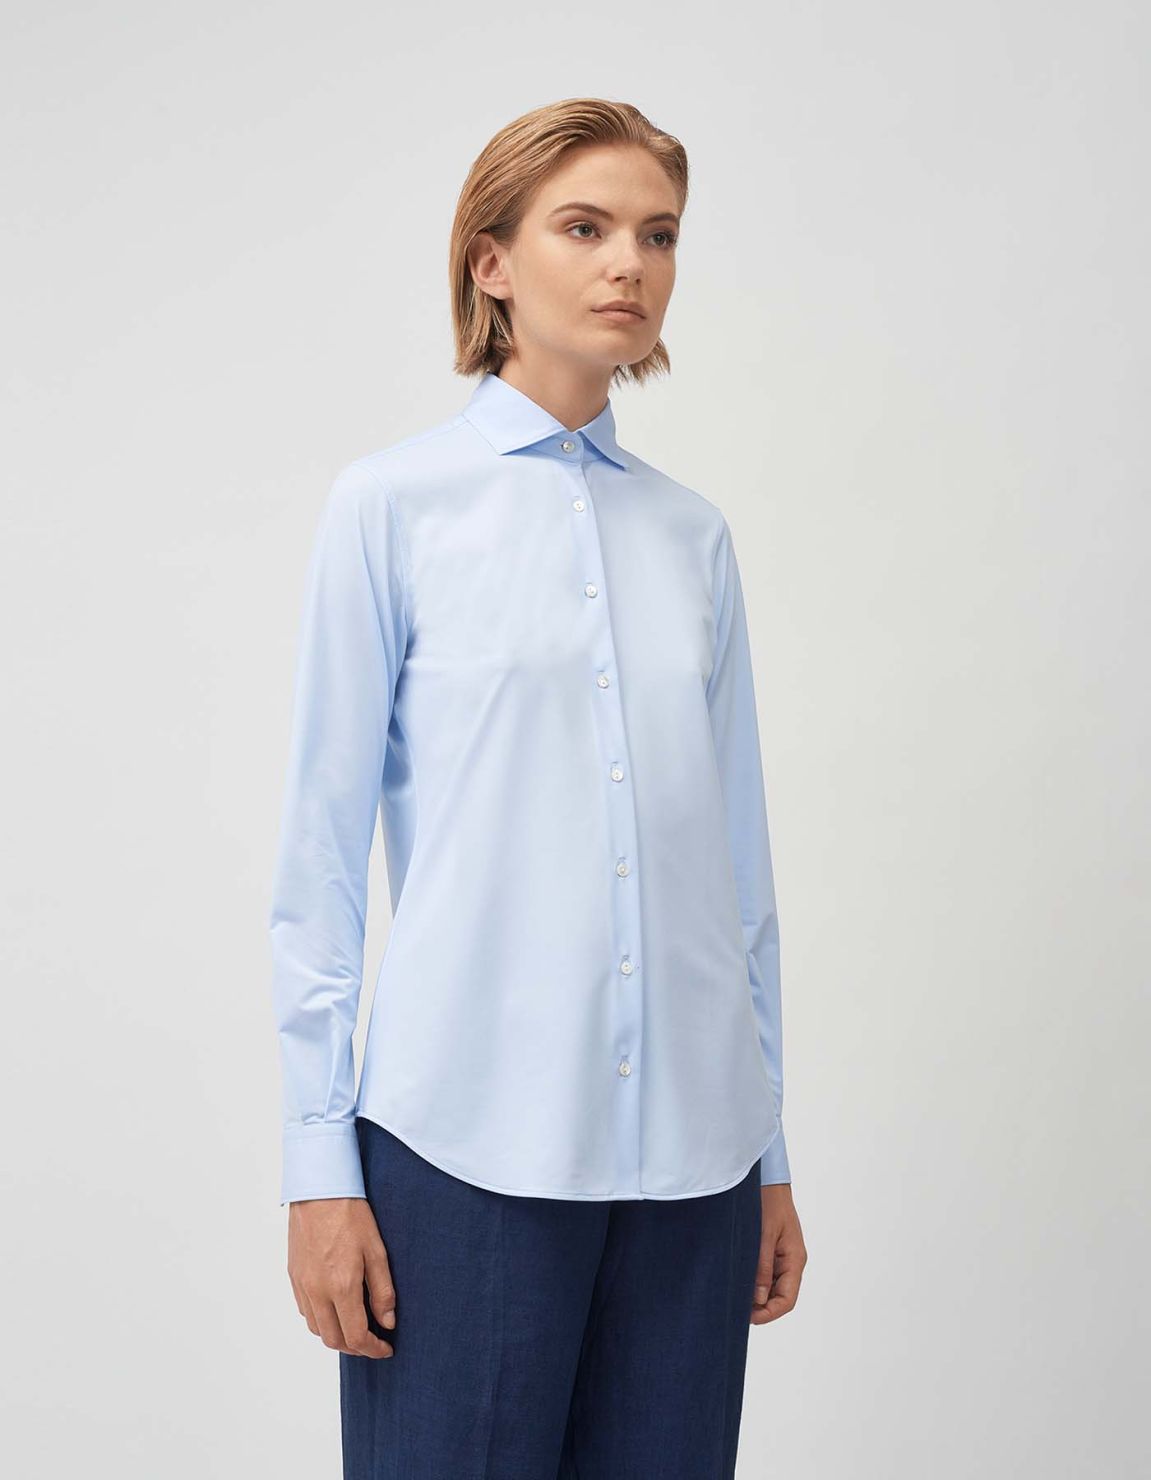 Shirt Light Blue Oxford Regular Fit 1